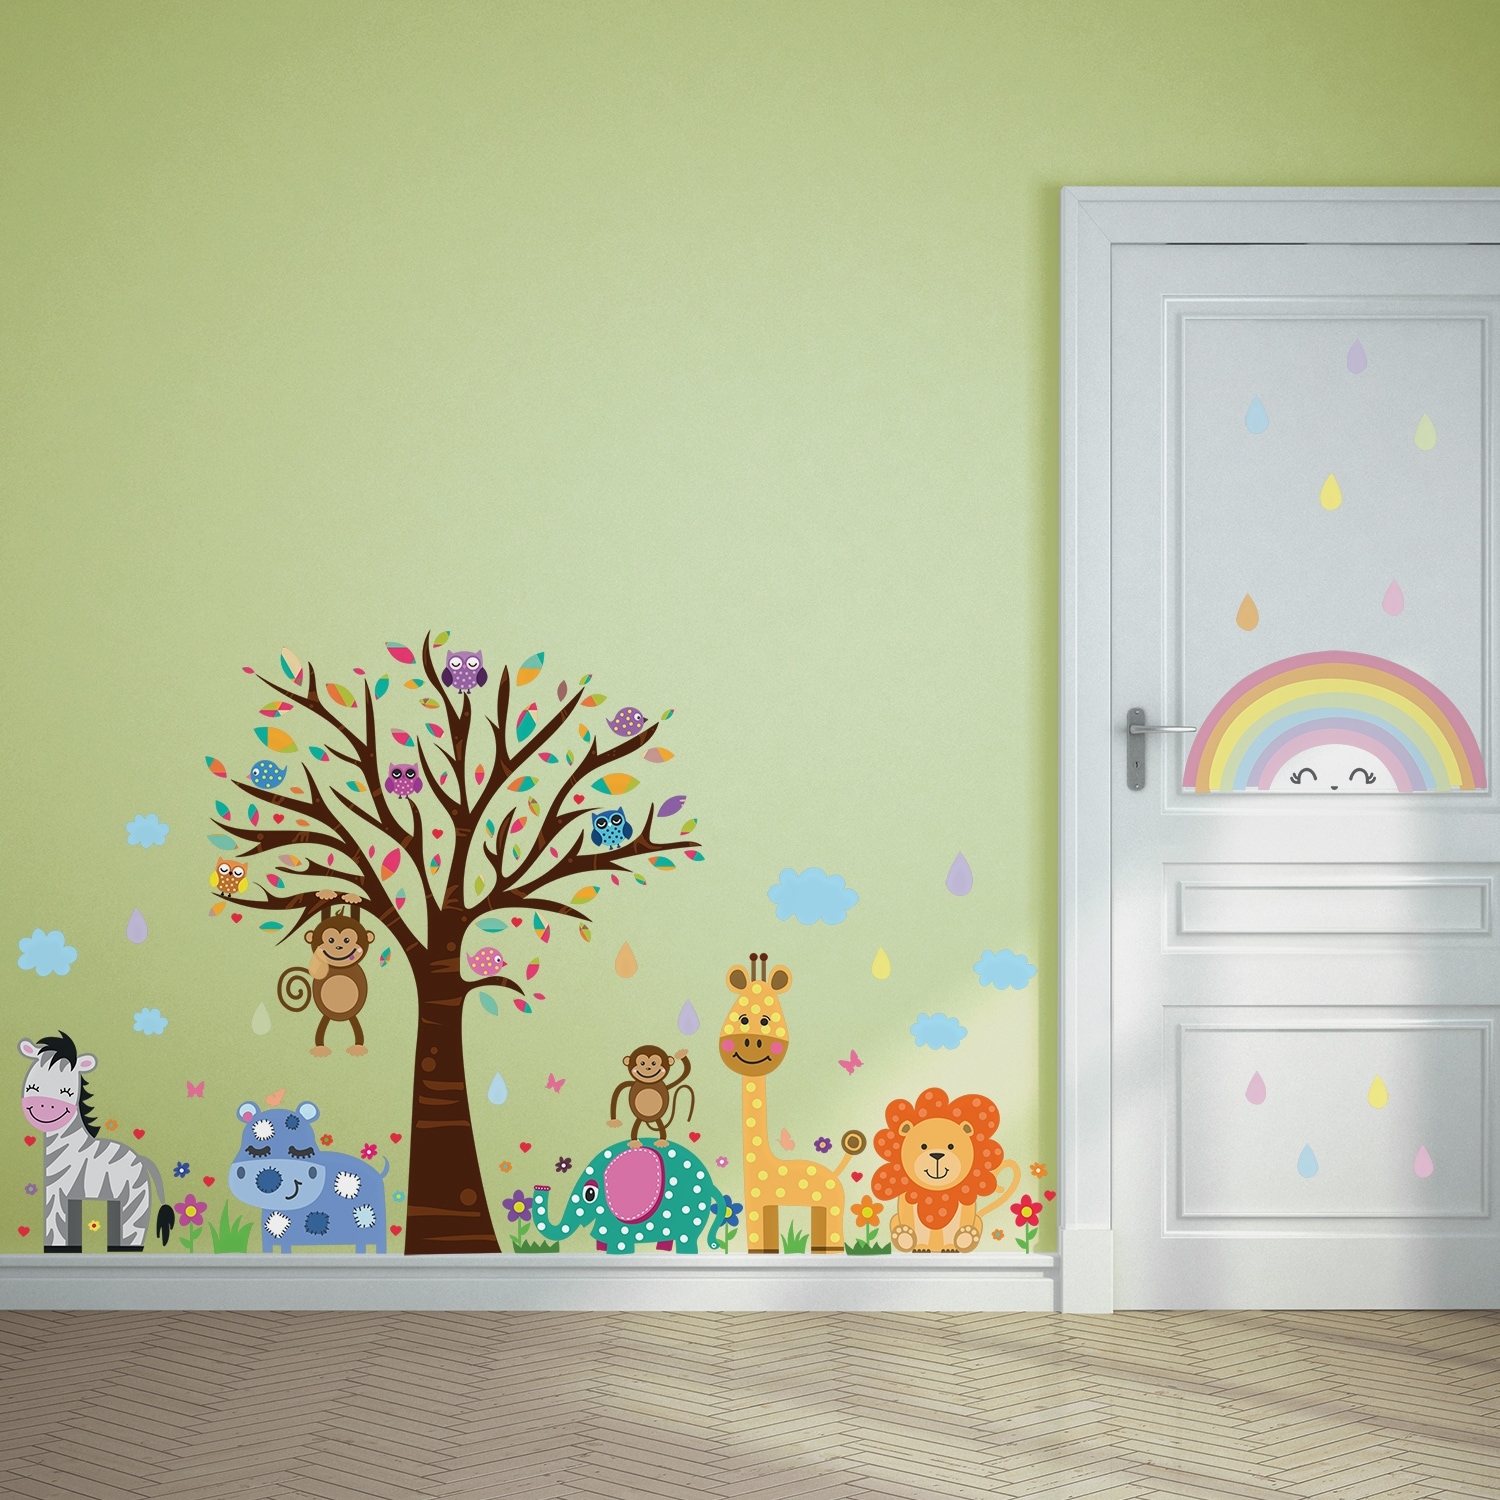 Walplus Colorful Rainbow Alphabet Kids Wall Stickers Nursery Décor